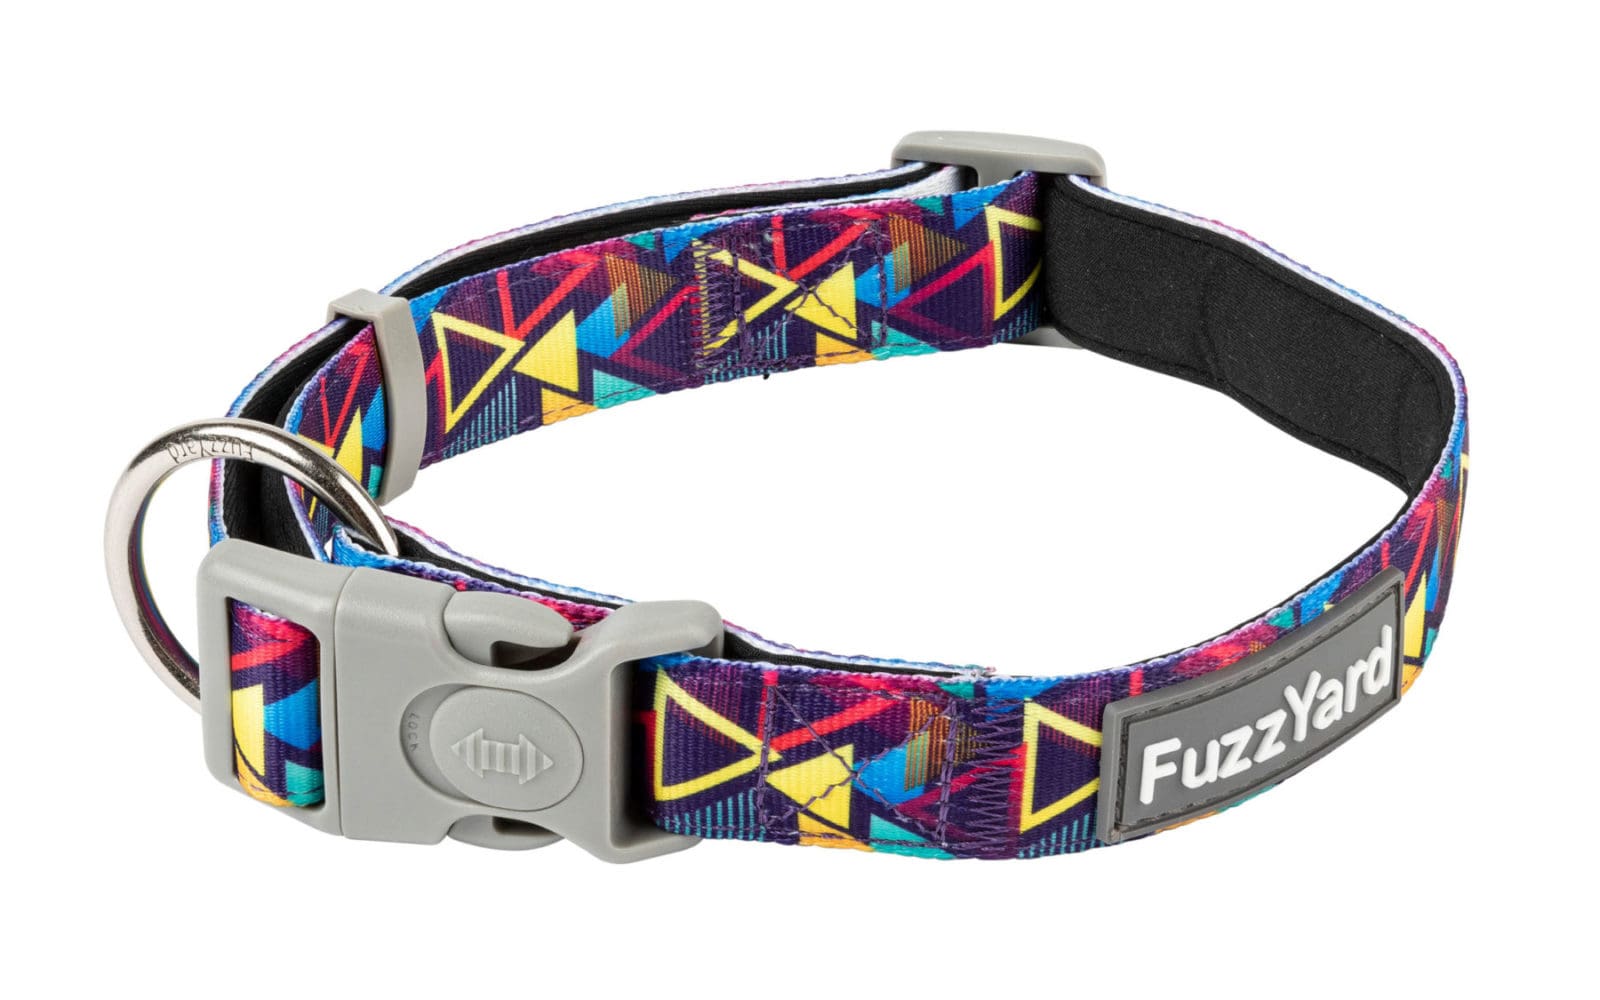 FuzzYard Dog Collars - Prism